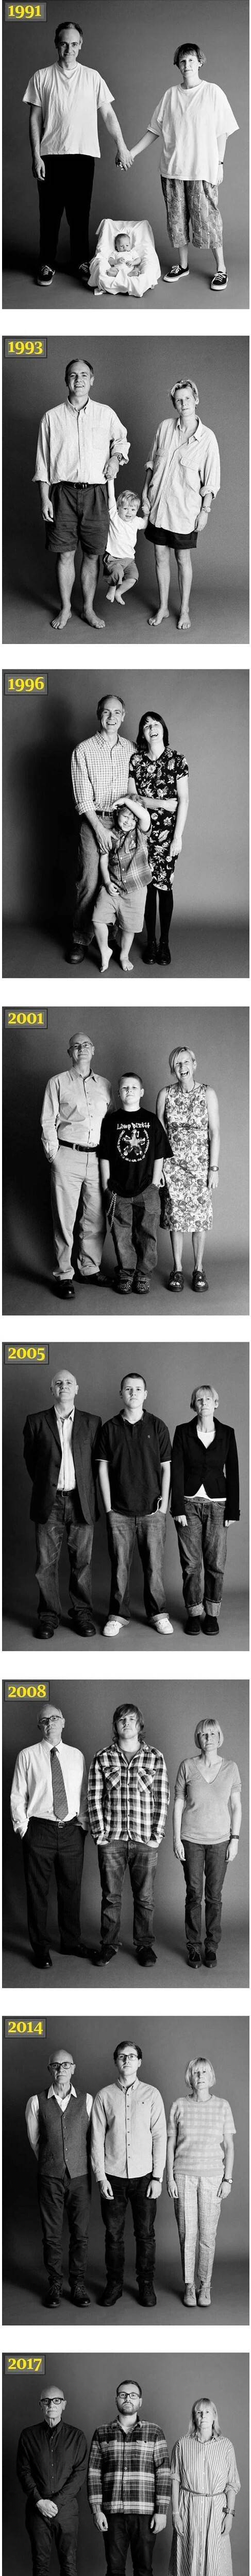 [스압] 30년 동안 찍은 가족사진.jpg